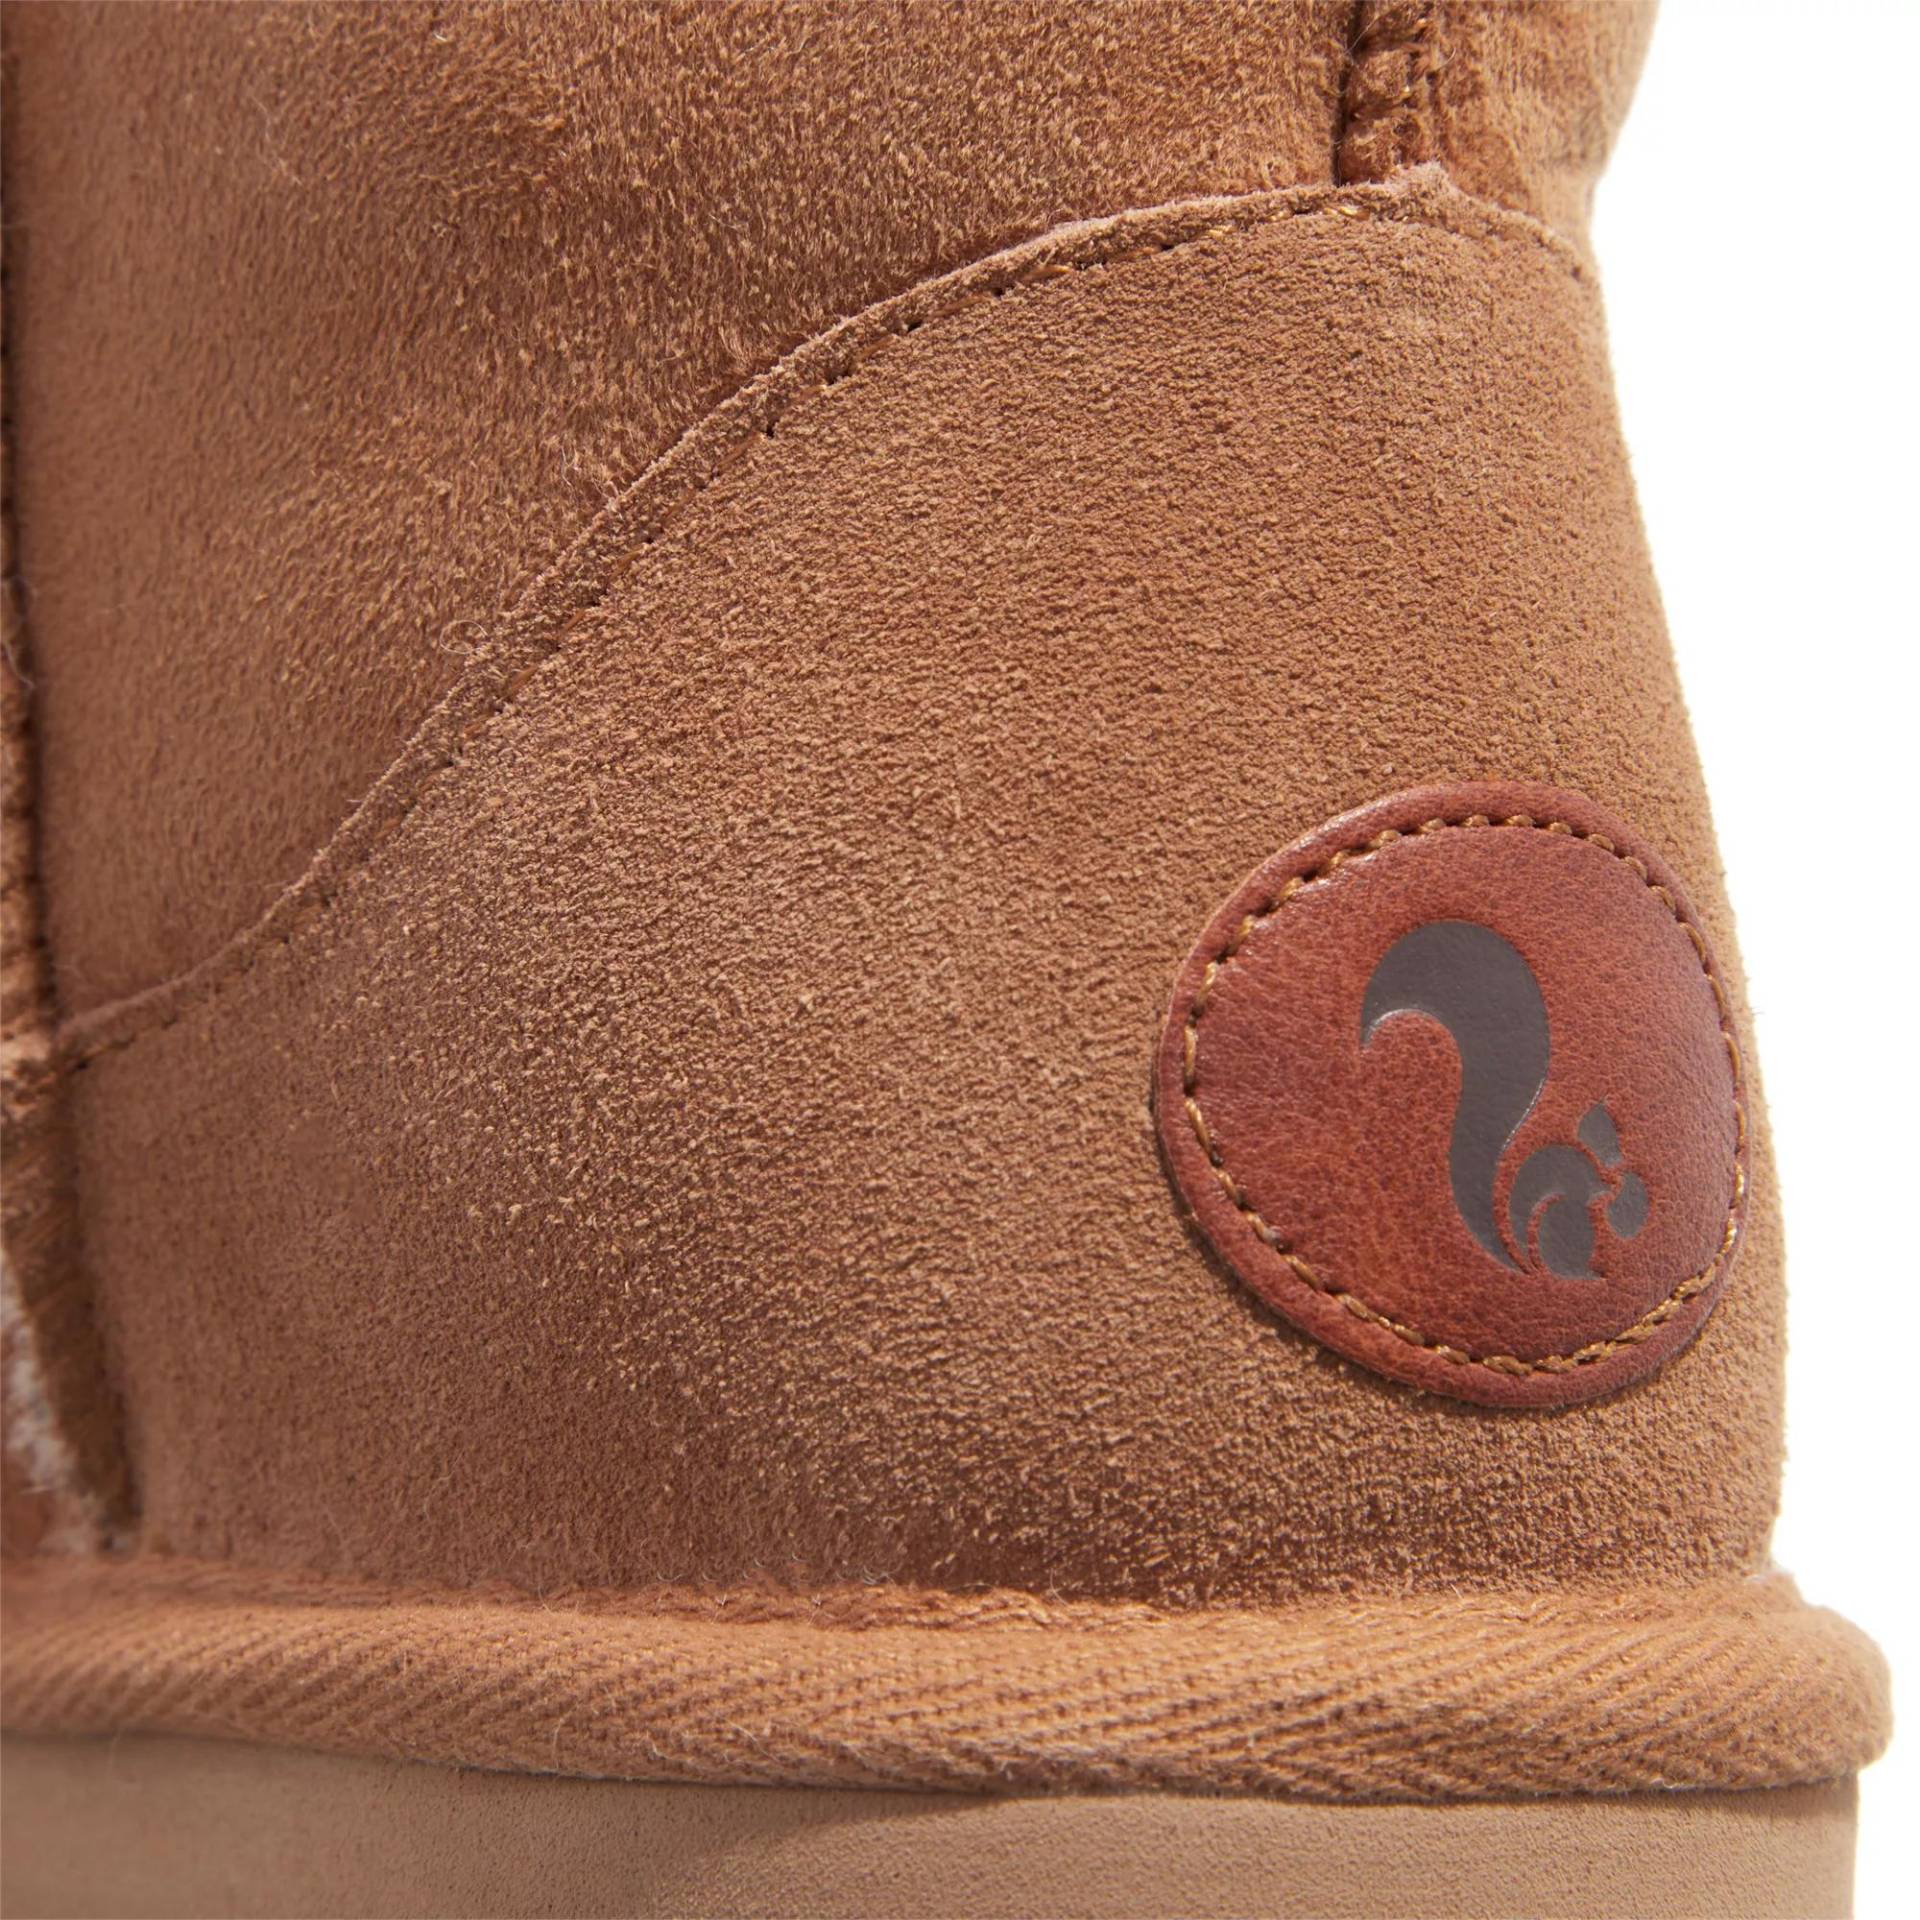 thies Sneakers - thies 1856 ® Classic Sheepskin boot cashew (W) - Gr. 42 (EU) - in Braun - für Damen von thies